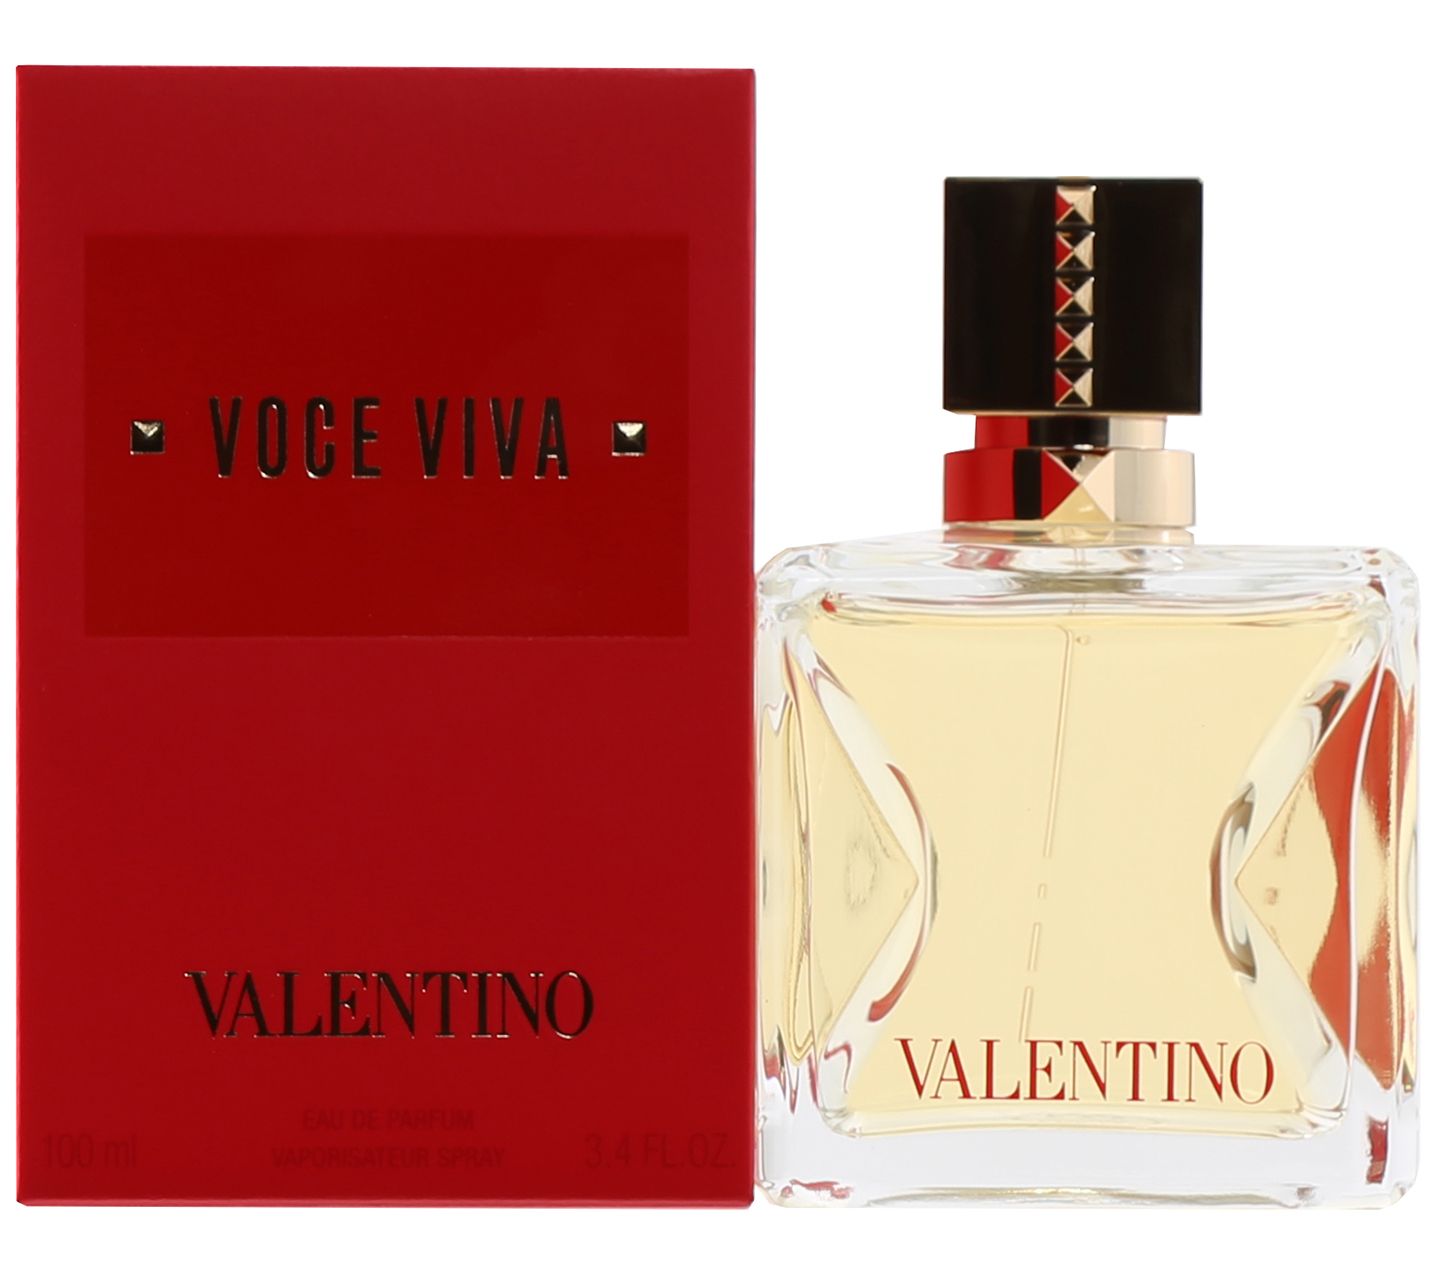 Voce 3.4 Eau Viva de Valentino oz Parfum